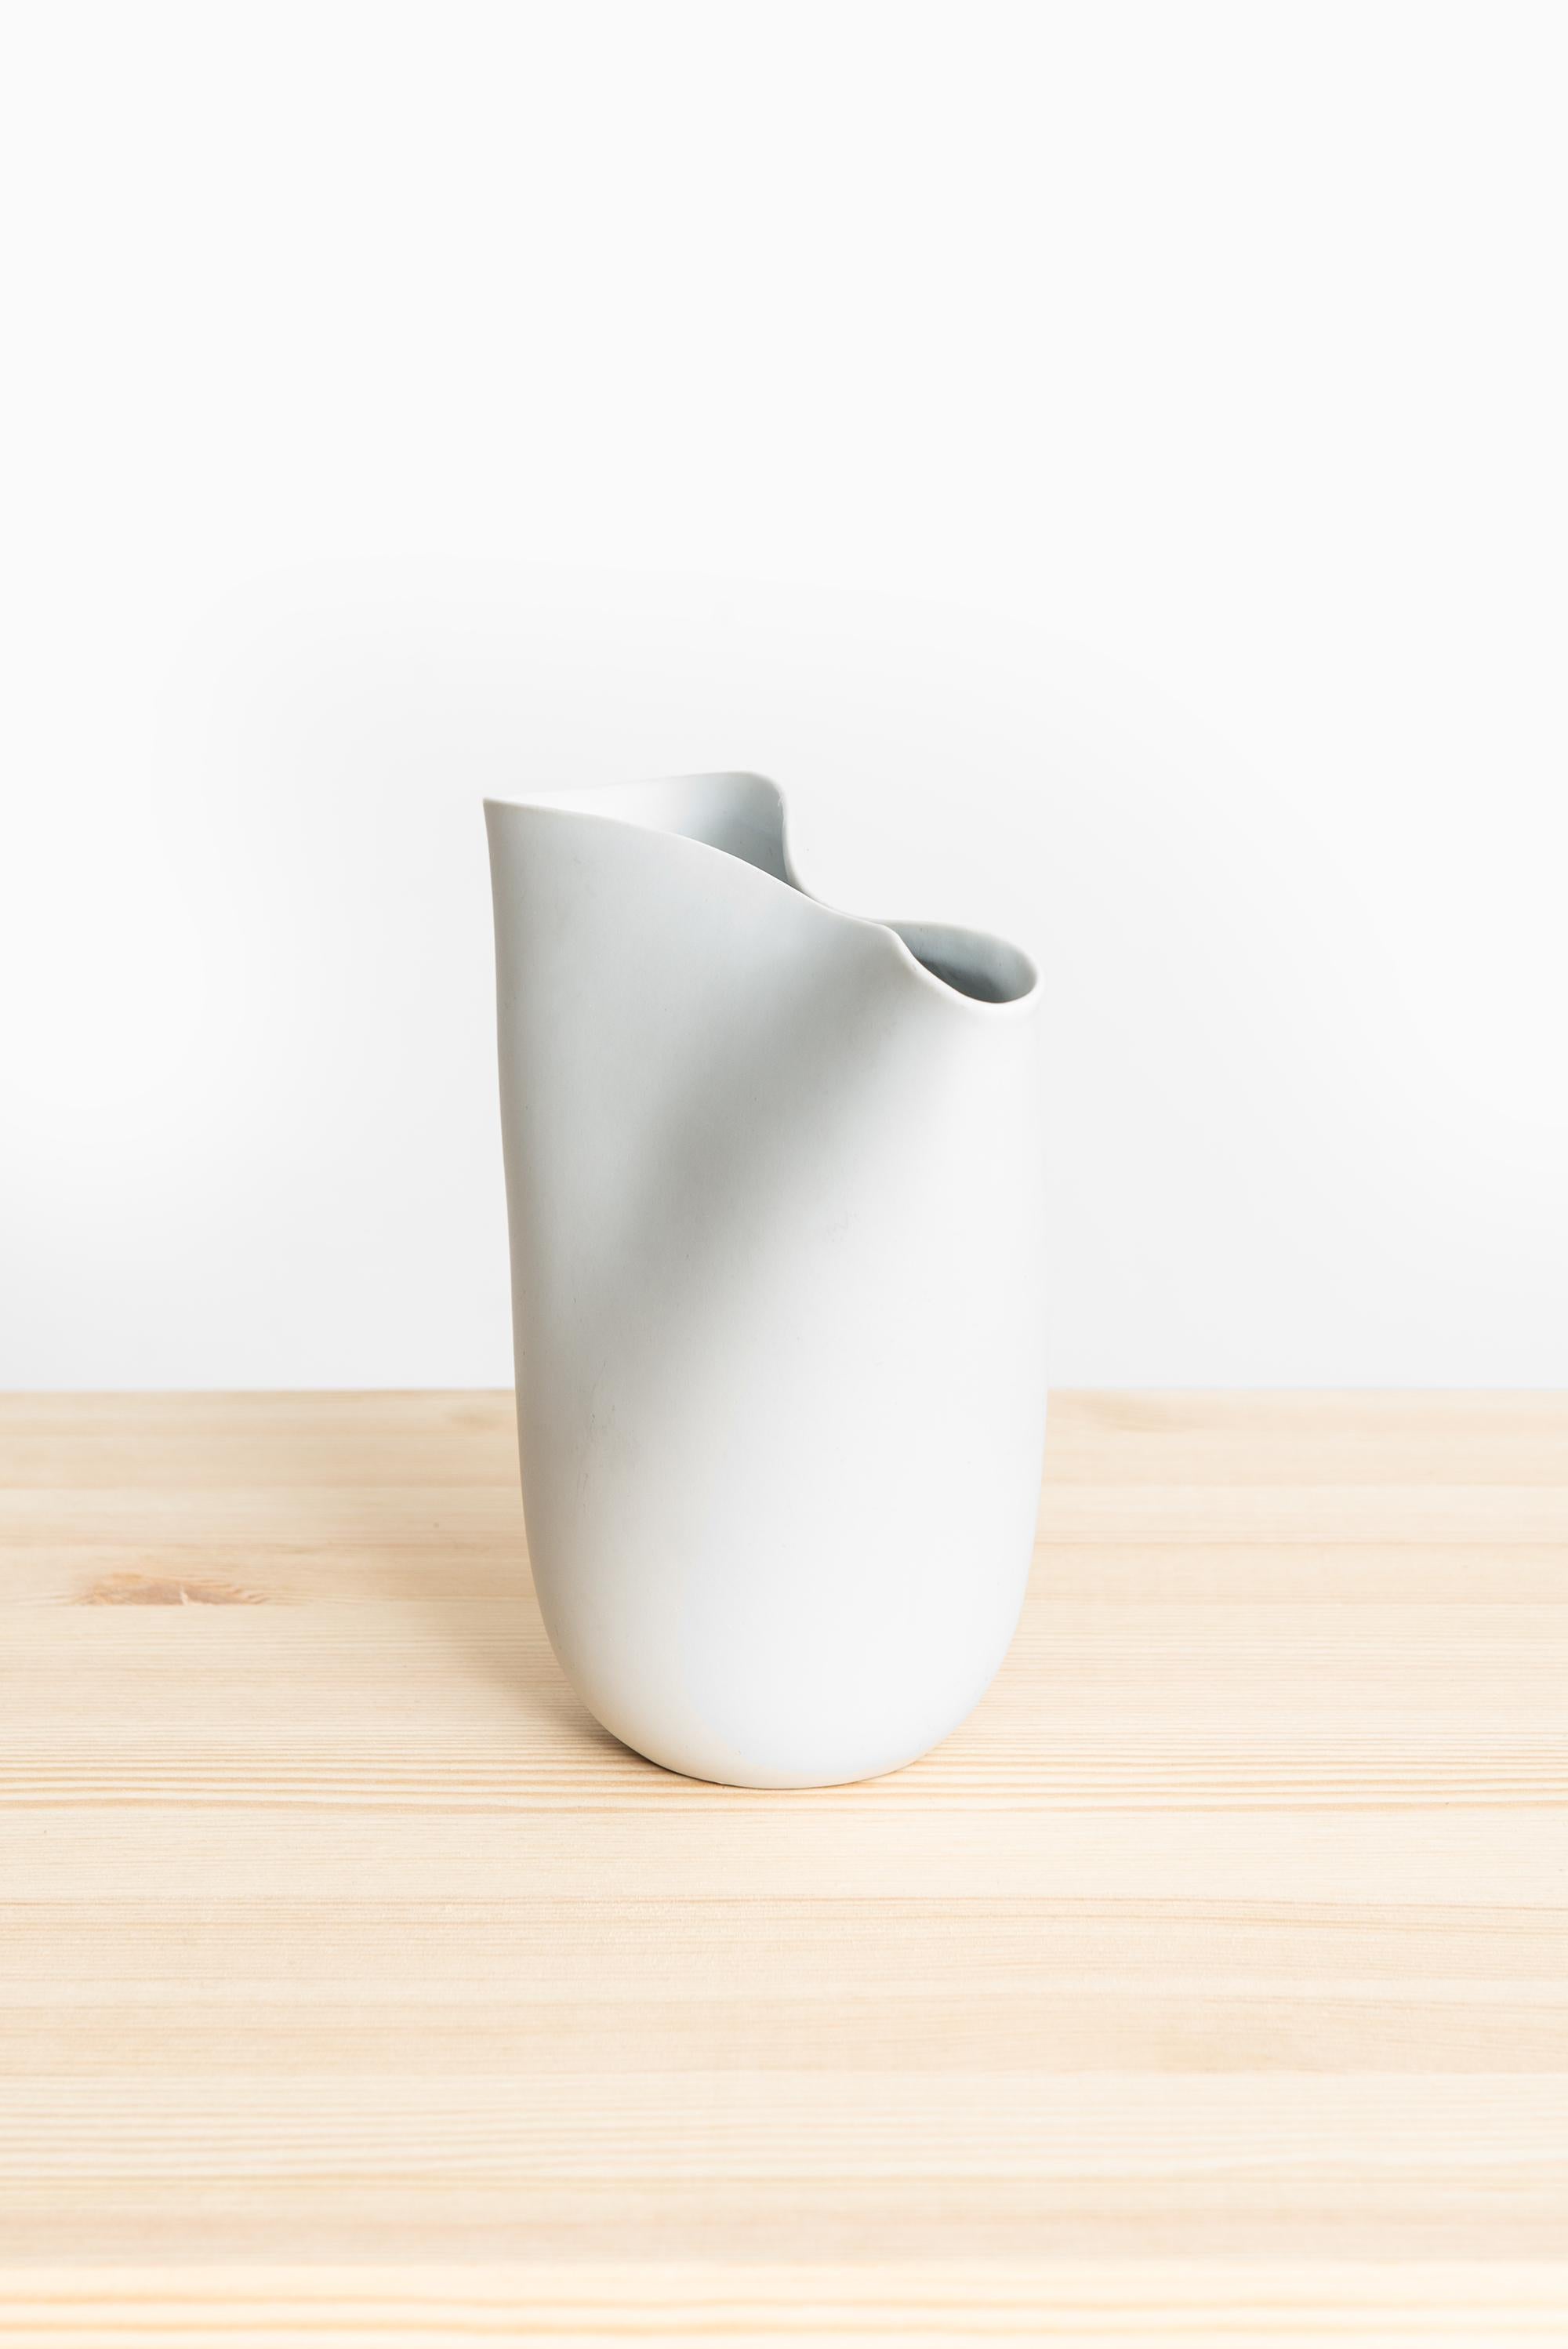 Big ceramic vase model Veckla designed by Stig Lindberg. Produced by Gustavsberg in Sweden.